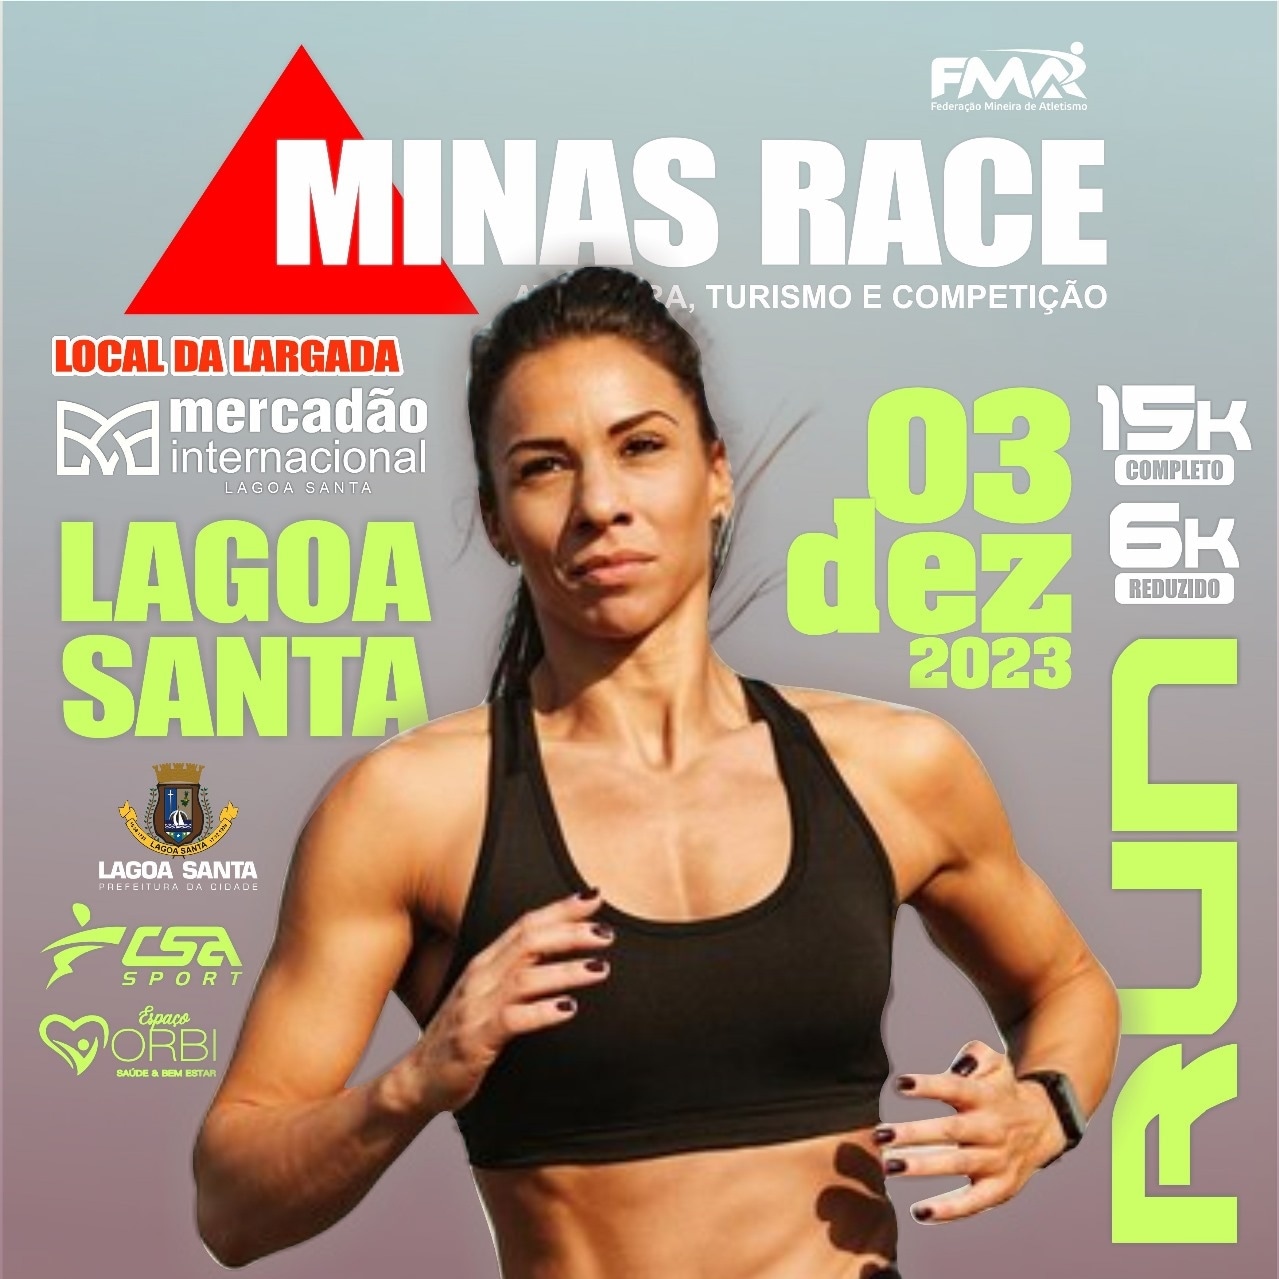 Minas Race Lagoa Santa